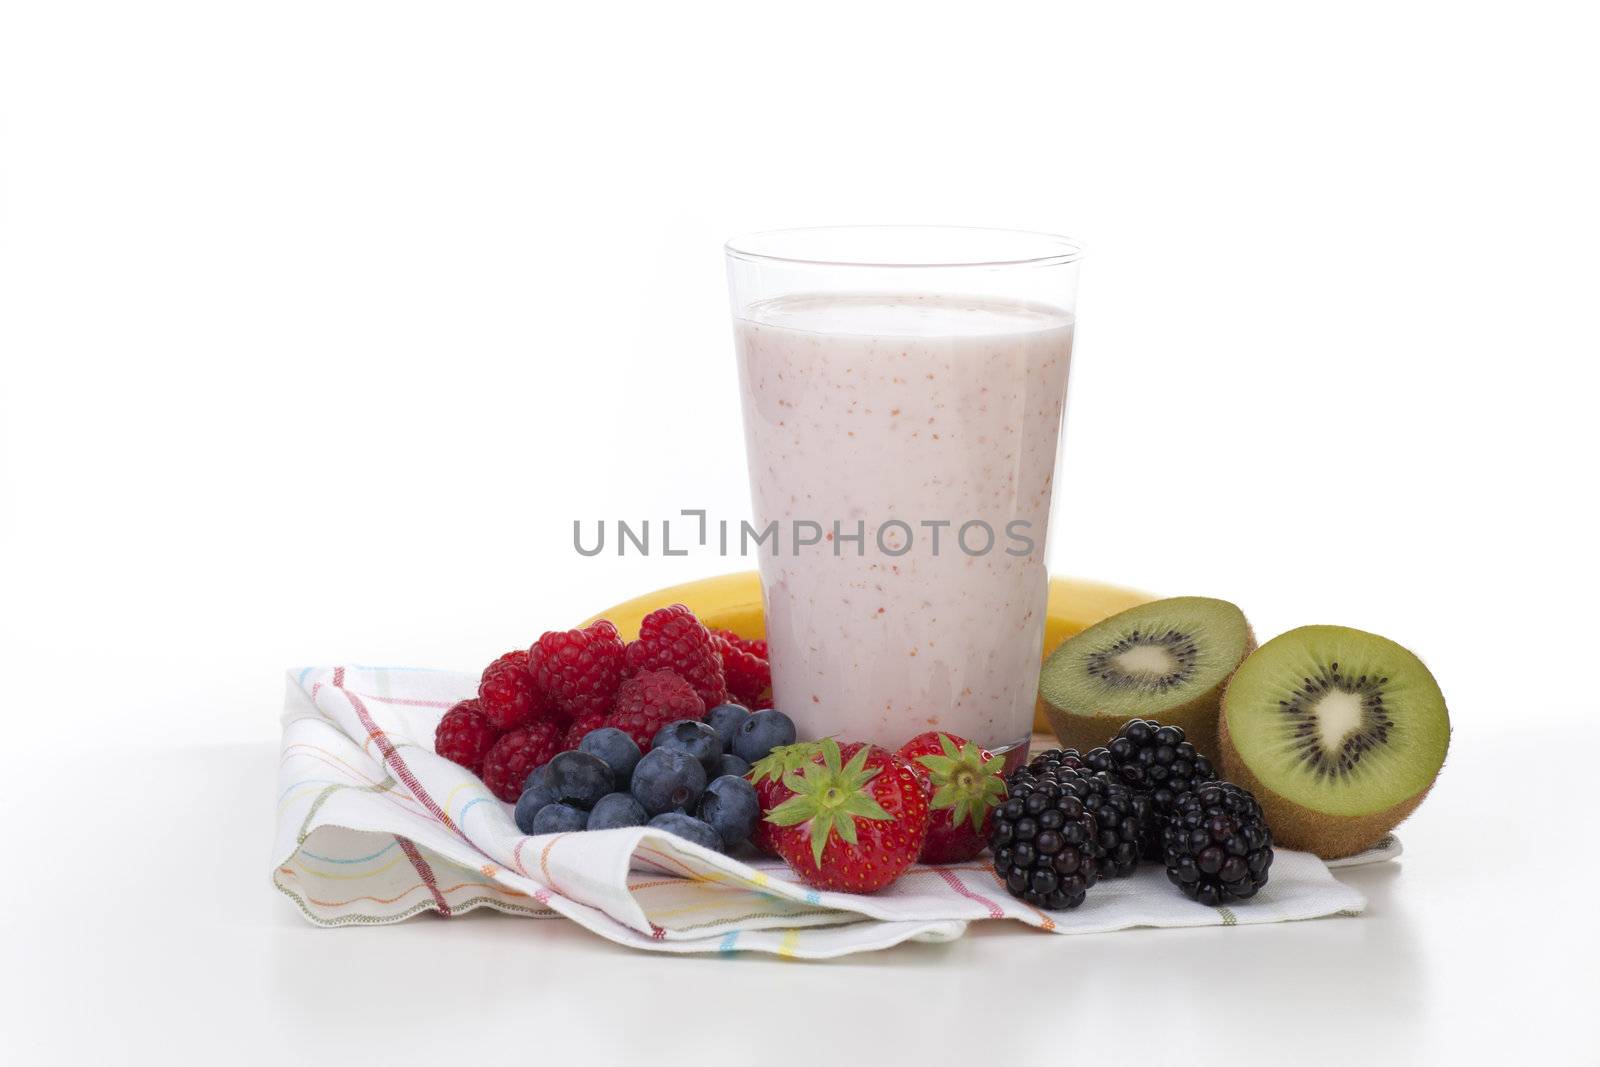 Fresh fruit surrounding fruit smoothie on white background